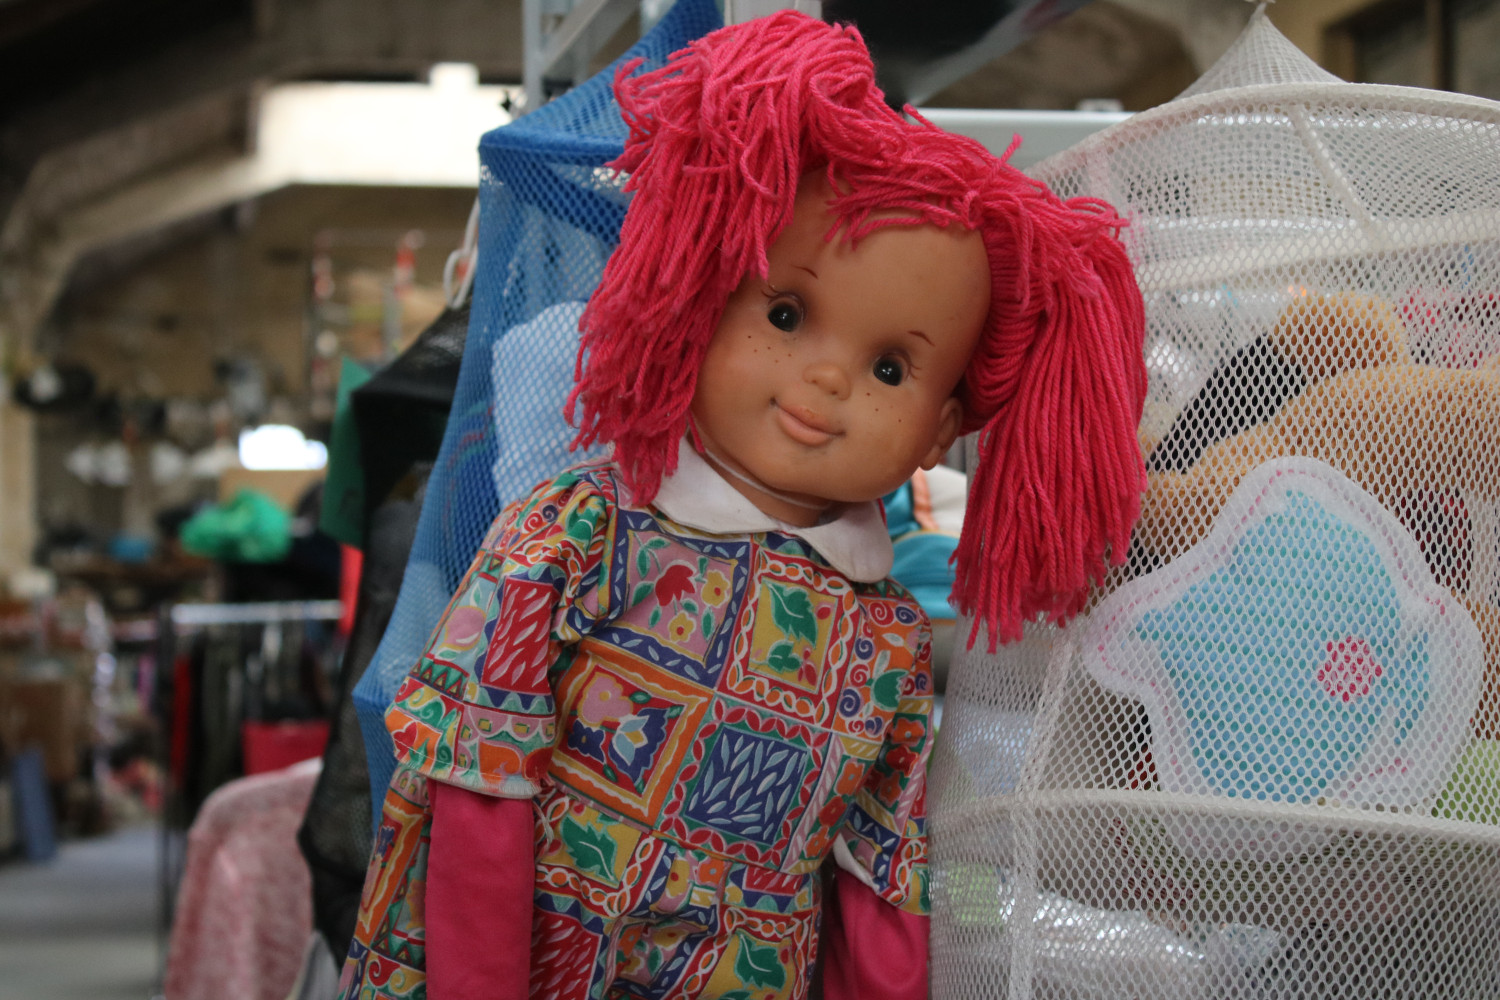 Le meilleur déchet c’est celui qu’on ne produit pas : cette poupée aurait pu finir à la poubelle, mais peut-être fera-t-elle de nouveau un enfant heureux © Anouk PASSELAC / Globe Reporters